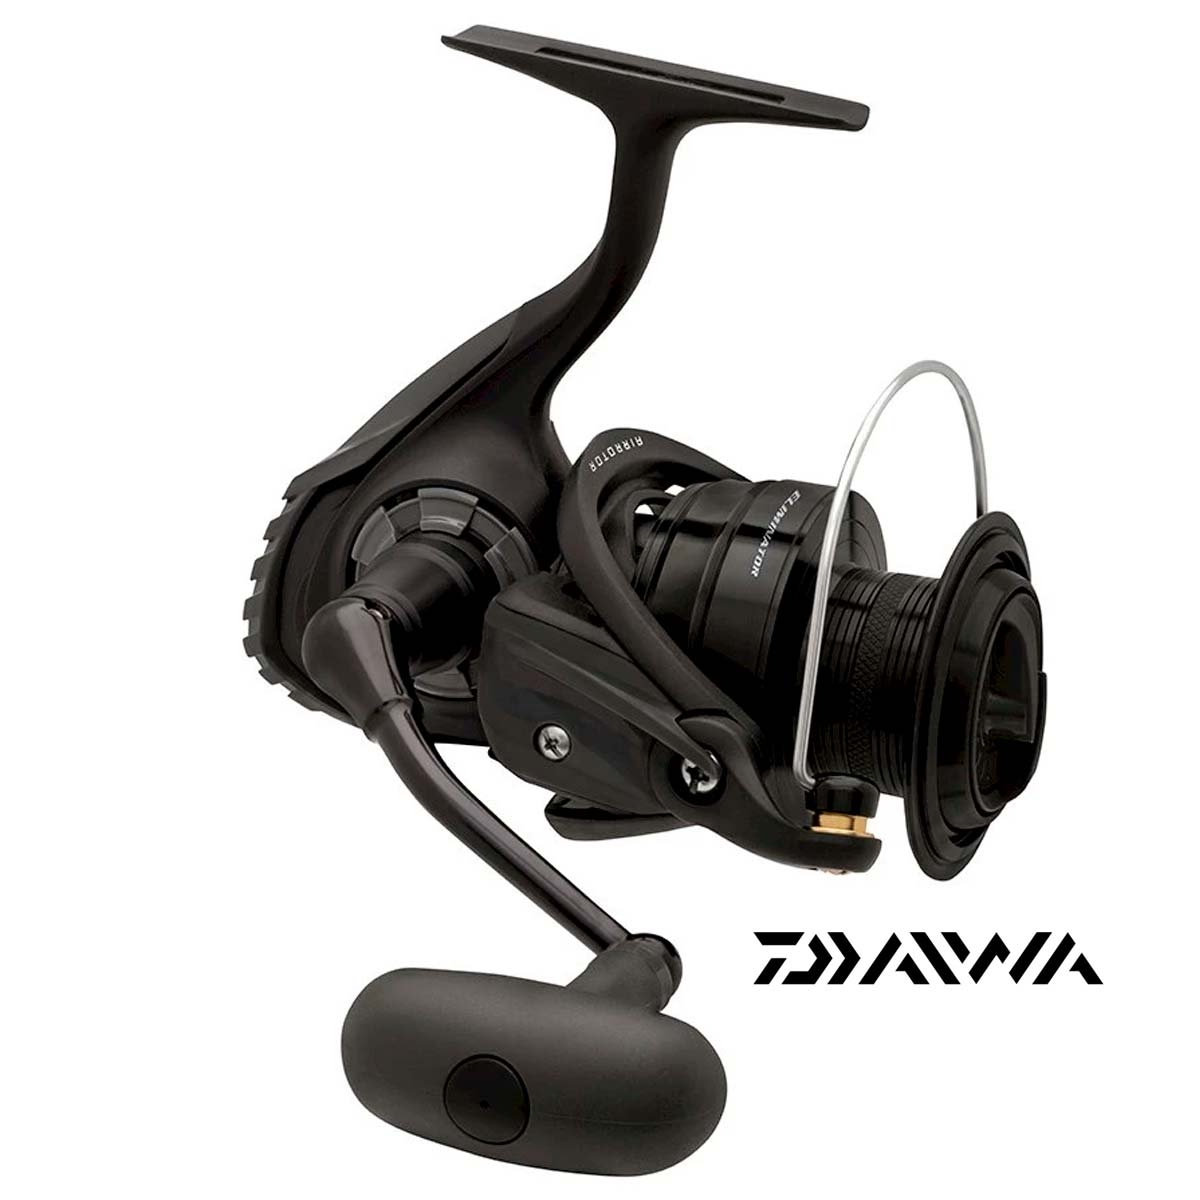 Daiwa ELIMINATOR4000 Spinning Reel - Black for sale online